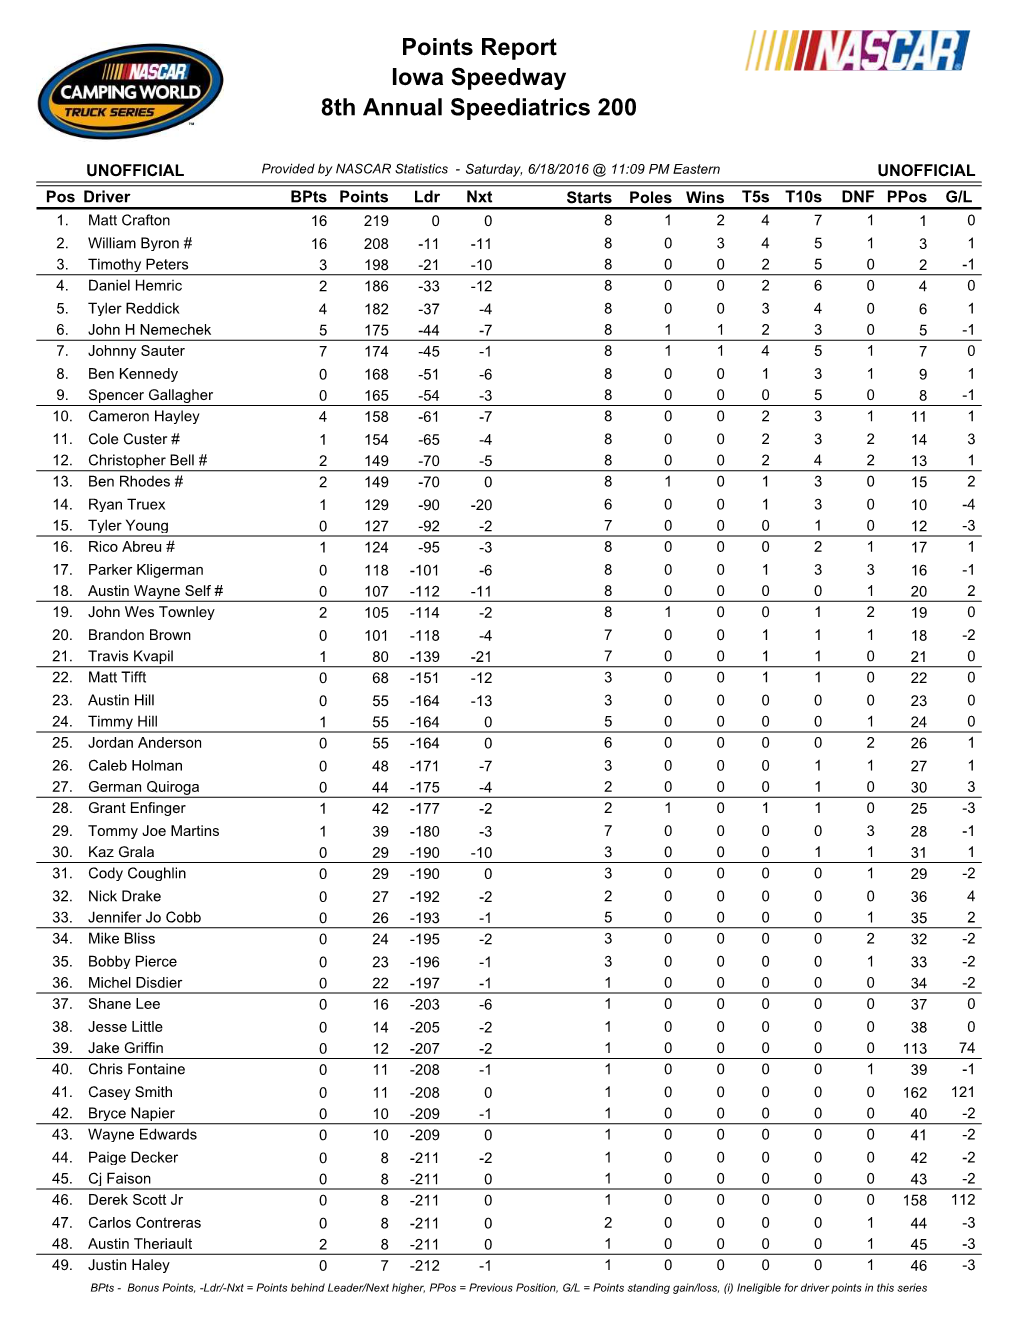 Iowa Speedway 8Th Annual Speediatrics 200 Points Report